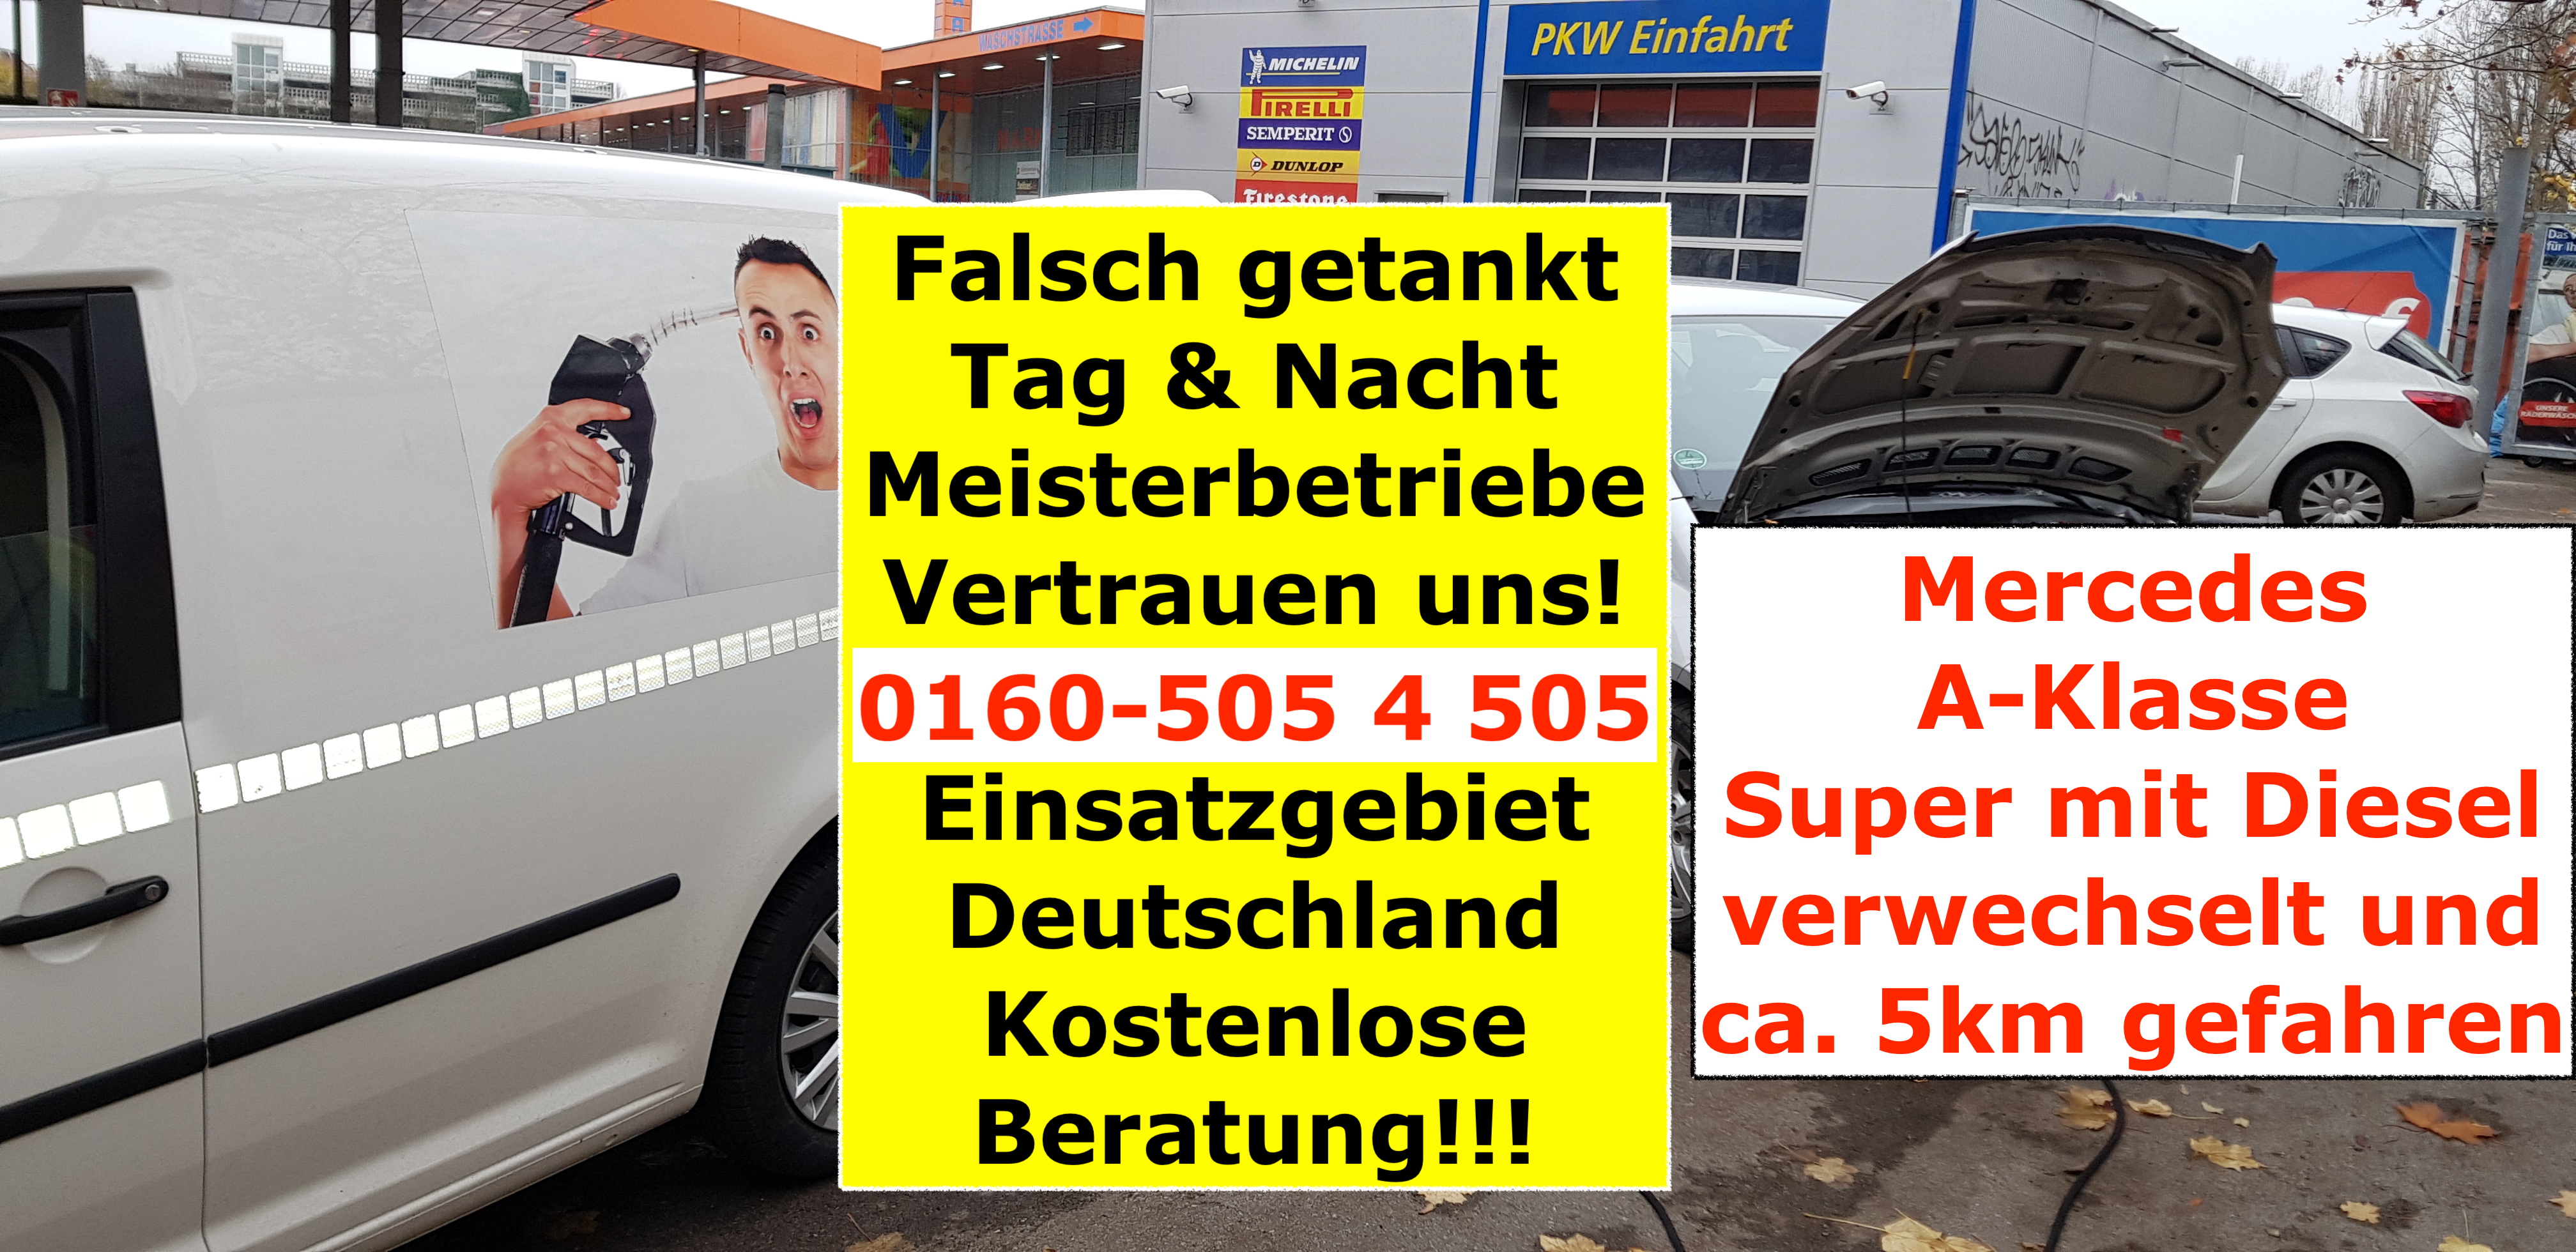 Auto falsch getankt Soforthilfe Deutschland